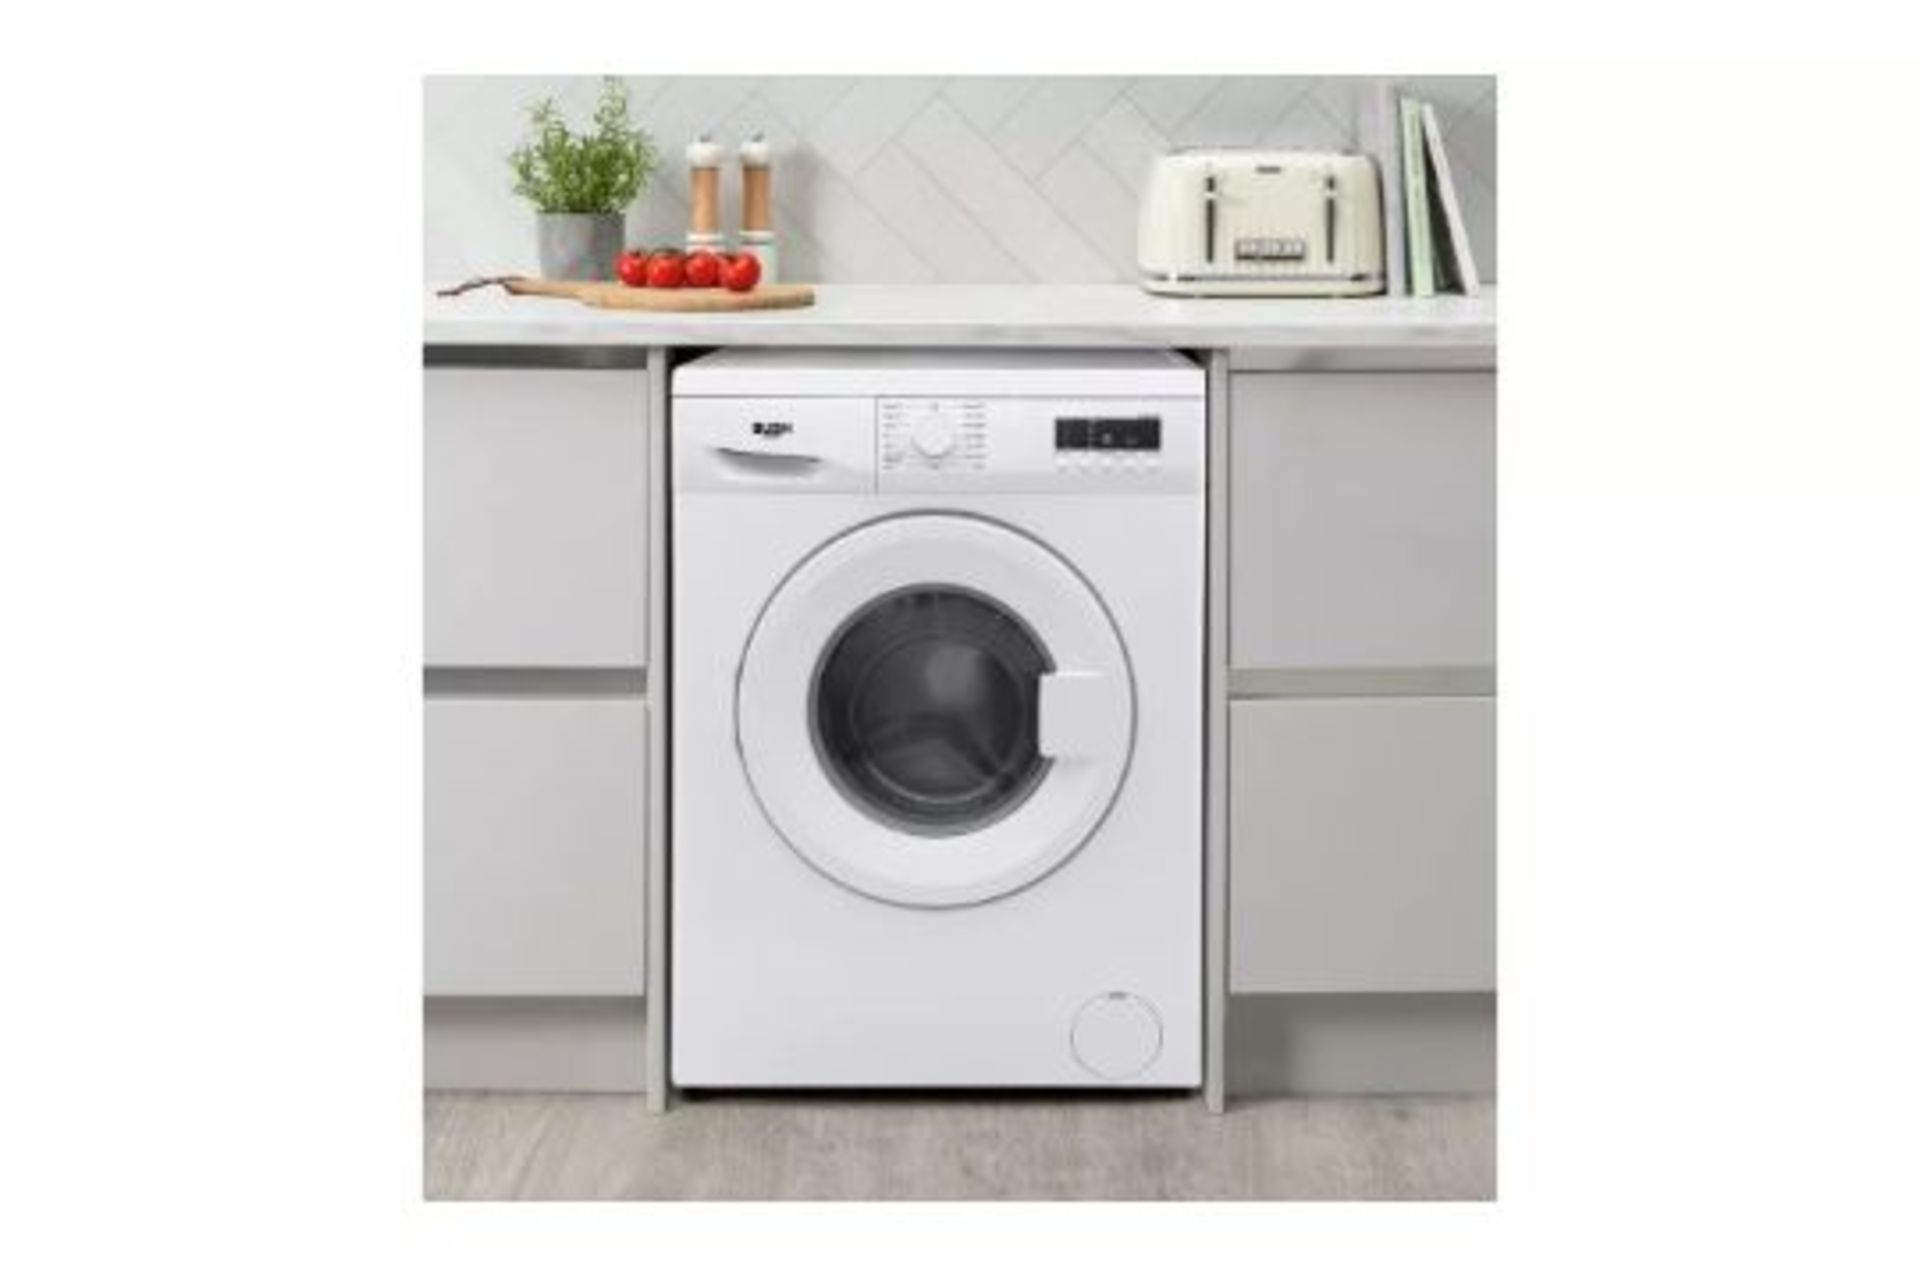 Bush WMDF612W 6KG 1200 Spin Washing Machine - White - ARGOS RRP £179.99